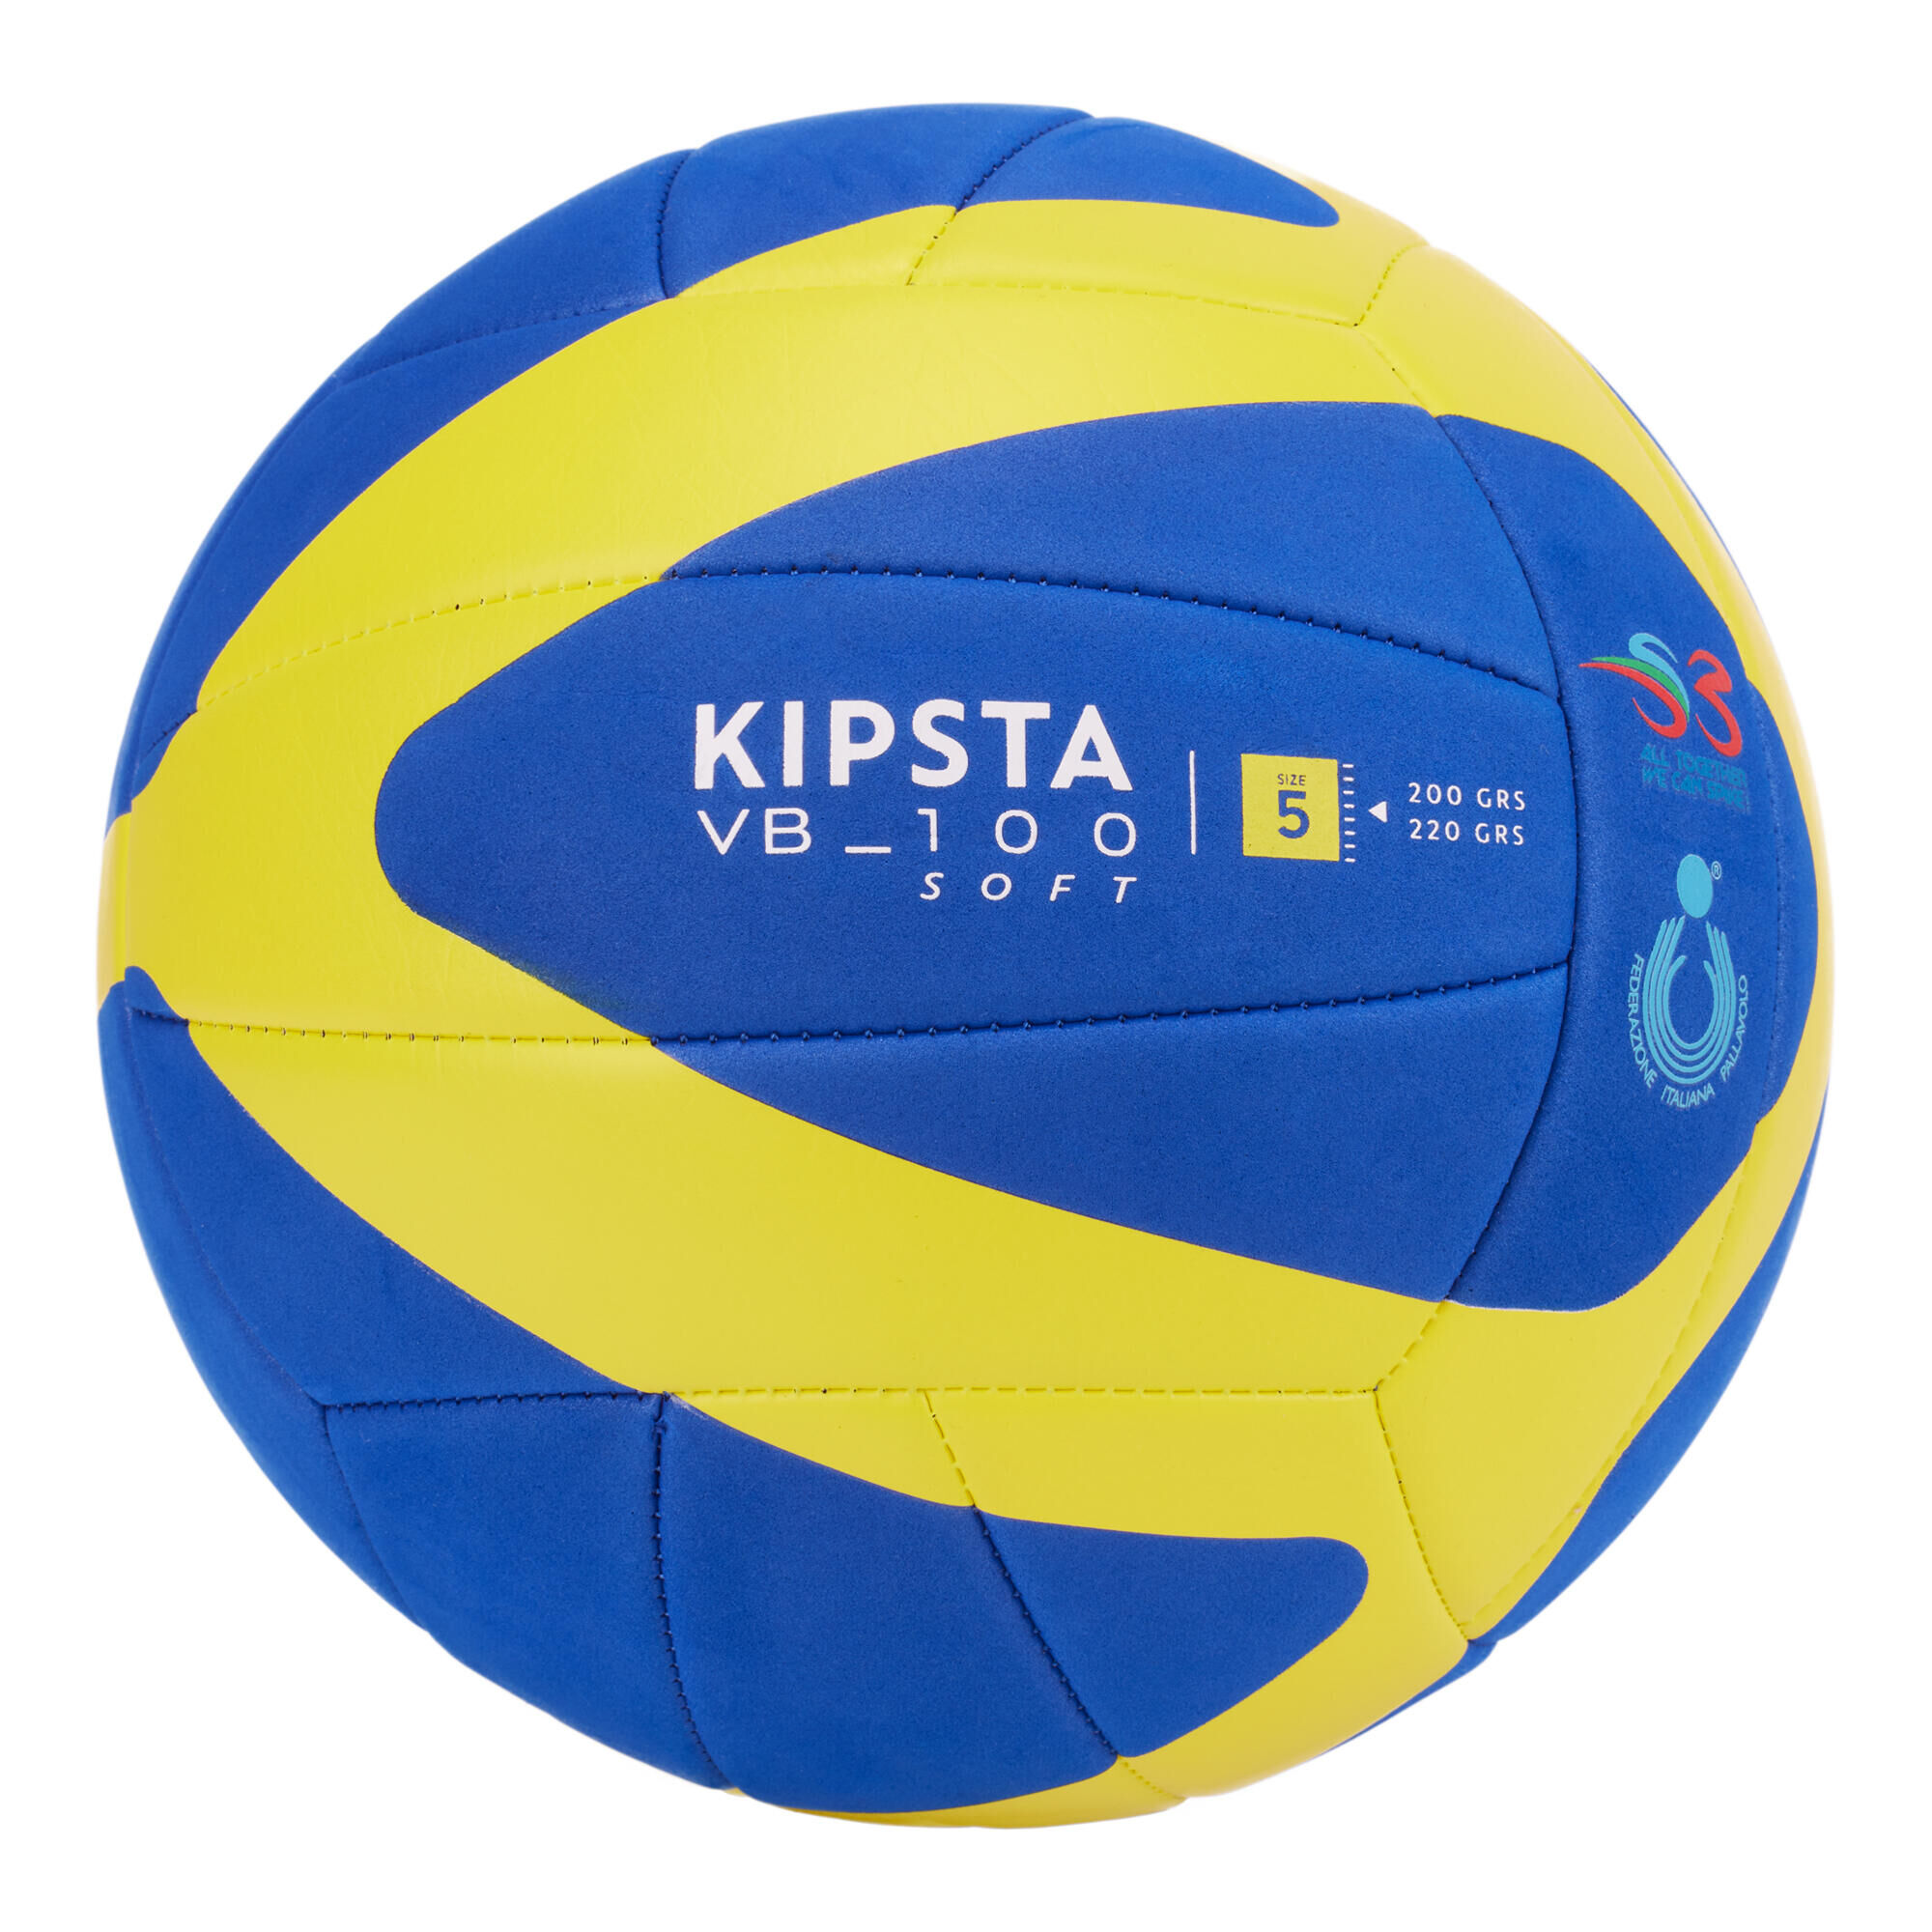 ALLSIX 200-220g Volleyball V100 Soft -Blue/Yellow- Italian Volleyball Federation FIPAV